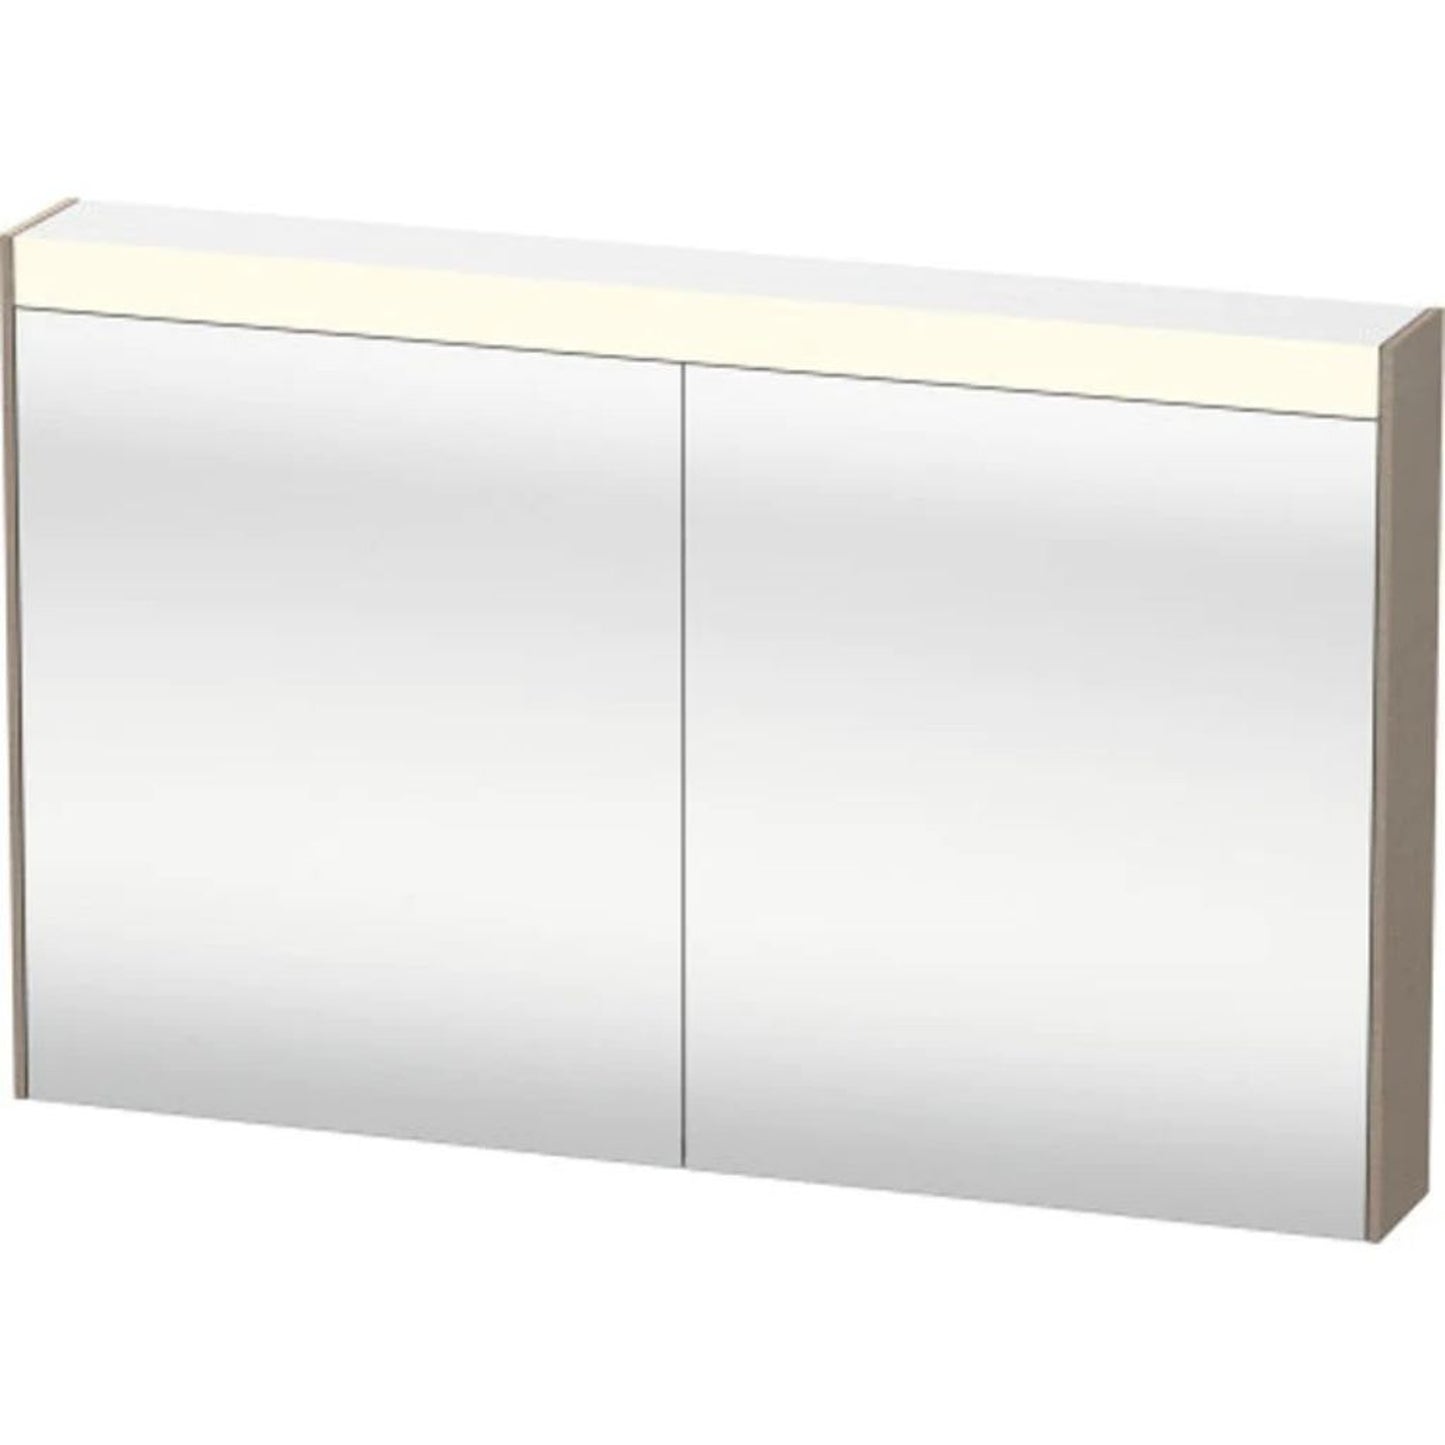 Duravit Brioso 40" x 30" x 6" Mirror Cabinet With Lighting Linen